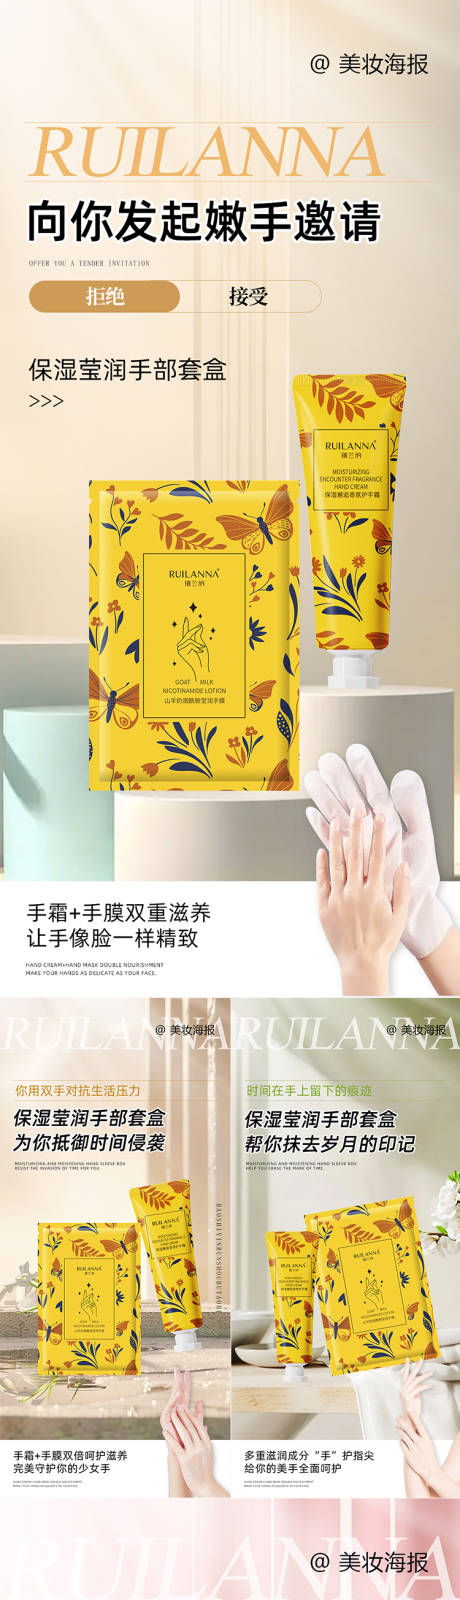 微商手部护理套盒产品系列海报